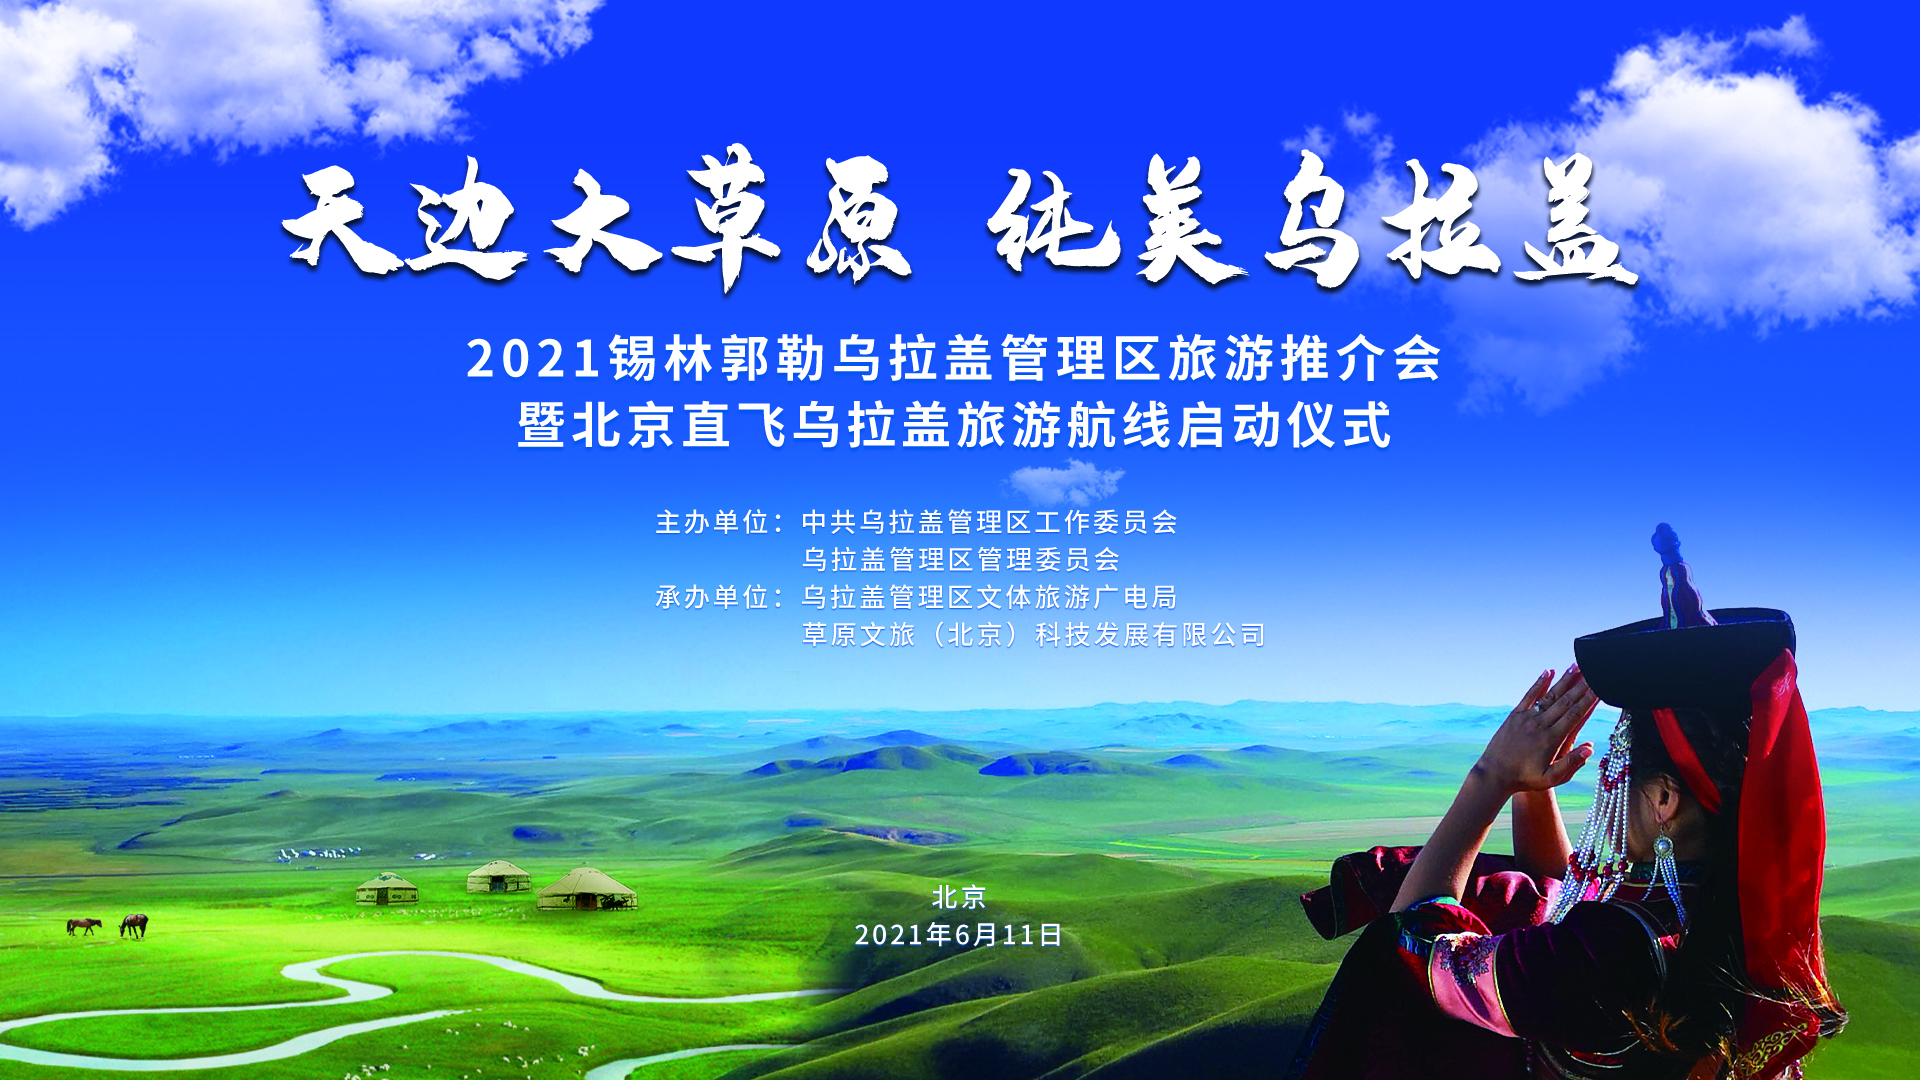 2021锡林郭勒乌拉盖旅游推介会暨北京直飞乌拉盖旅游航线在京启动